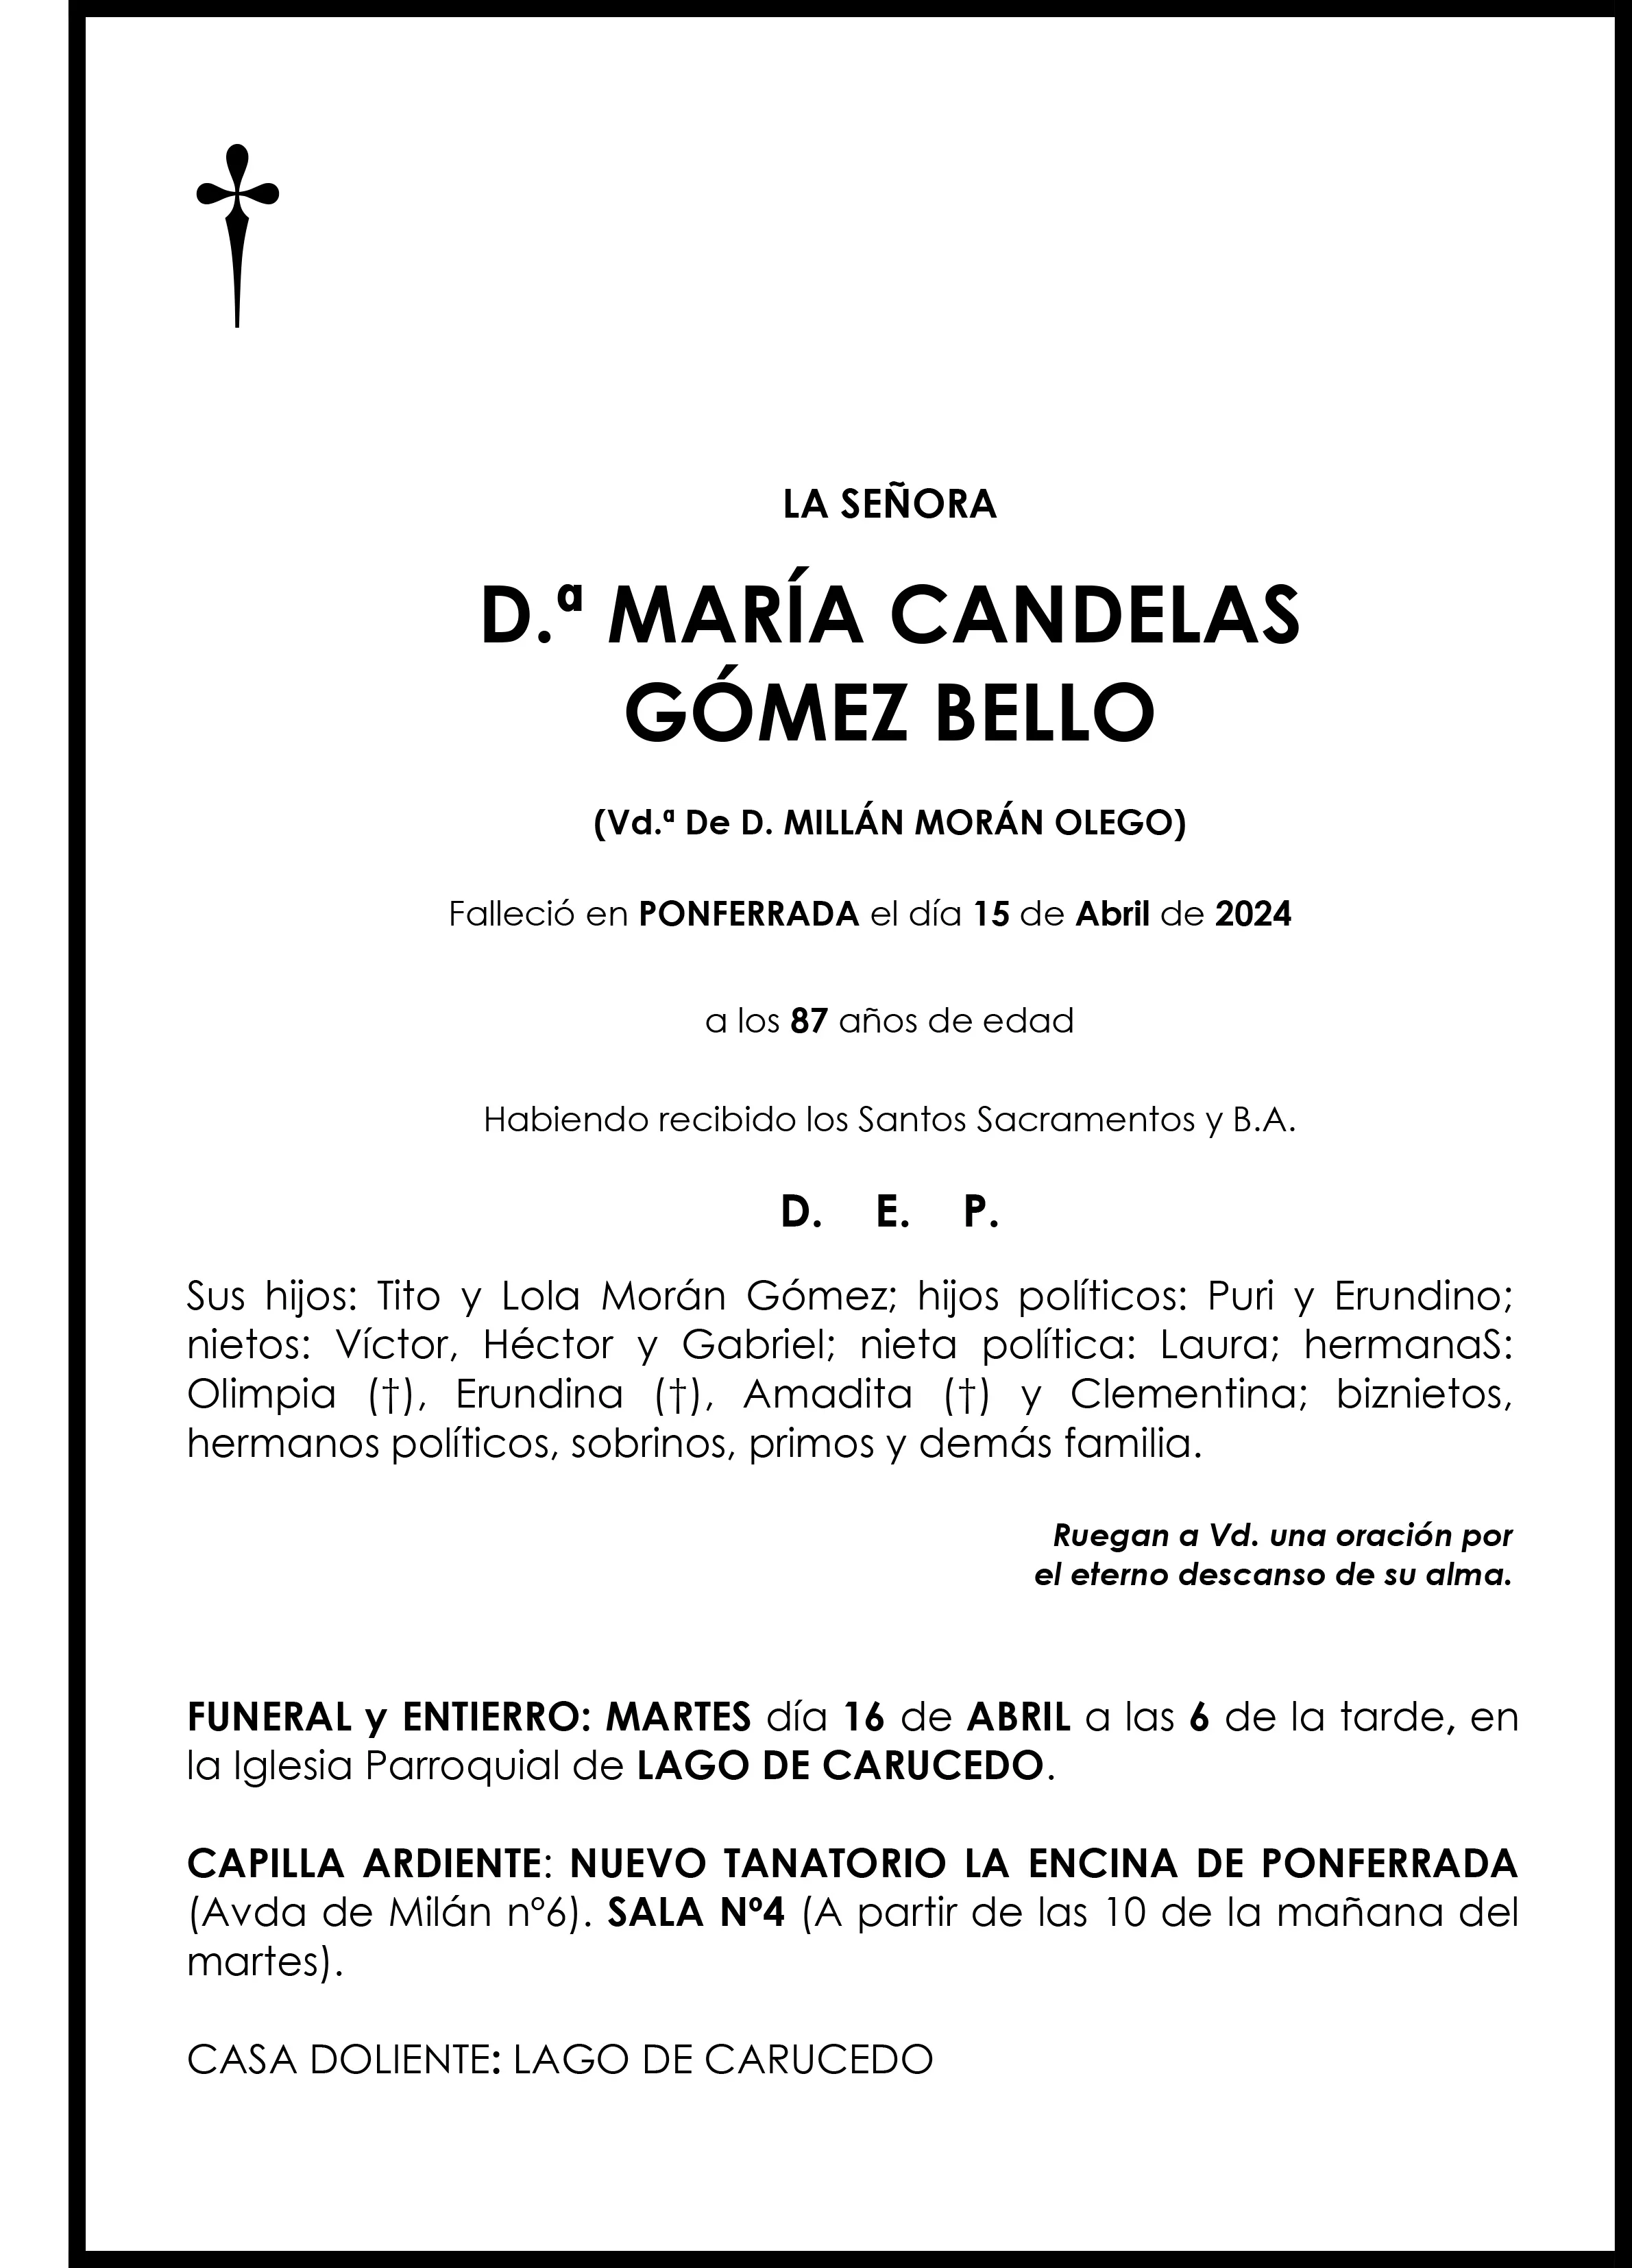 MARIA CANDELAS GOMEZ BELLO